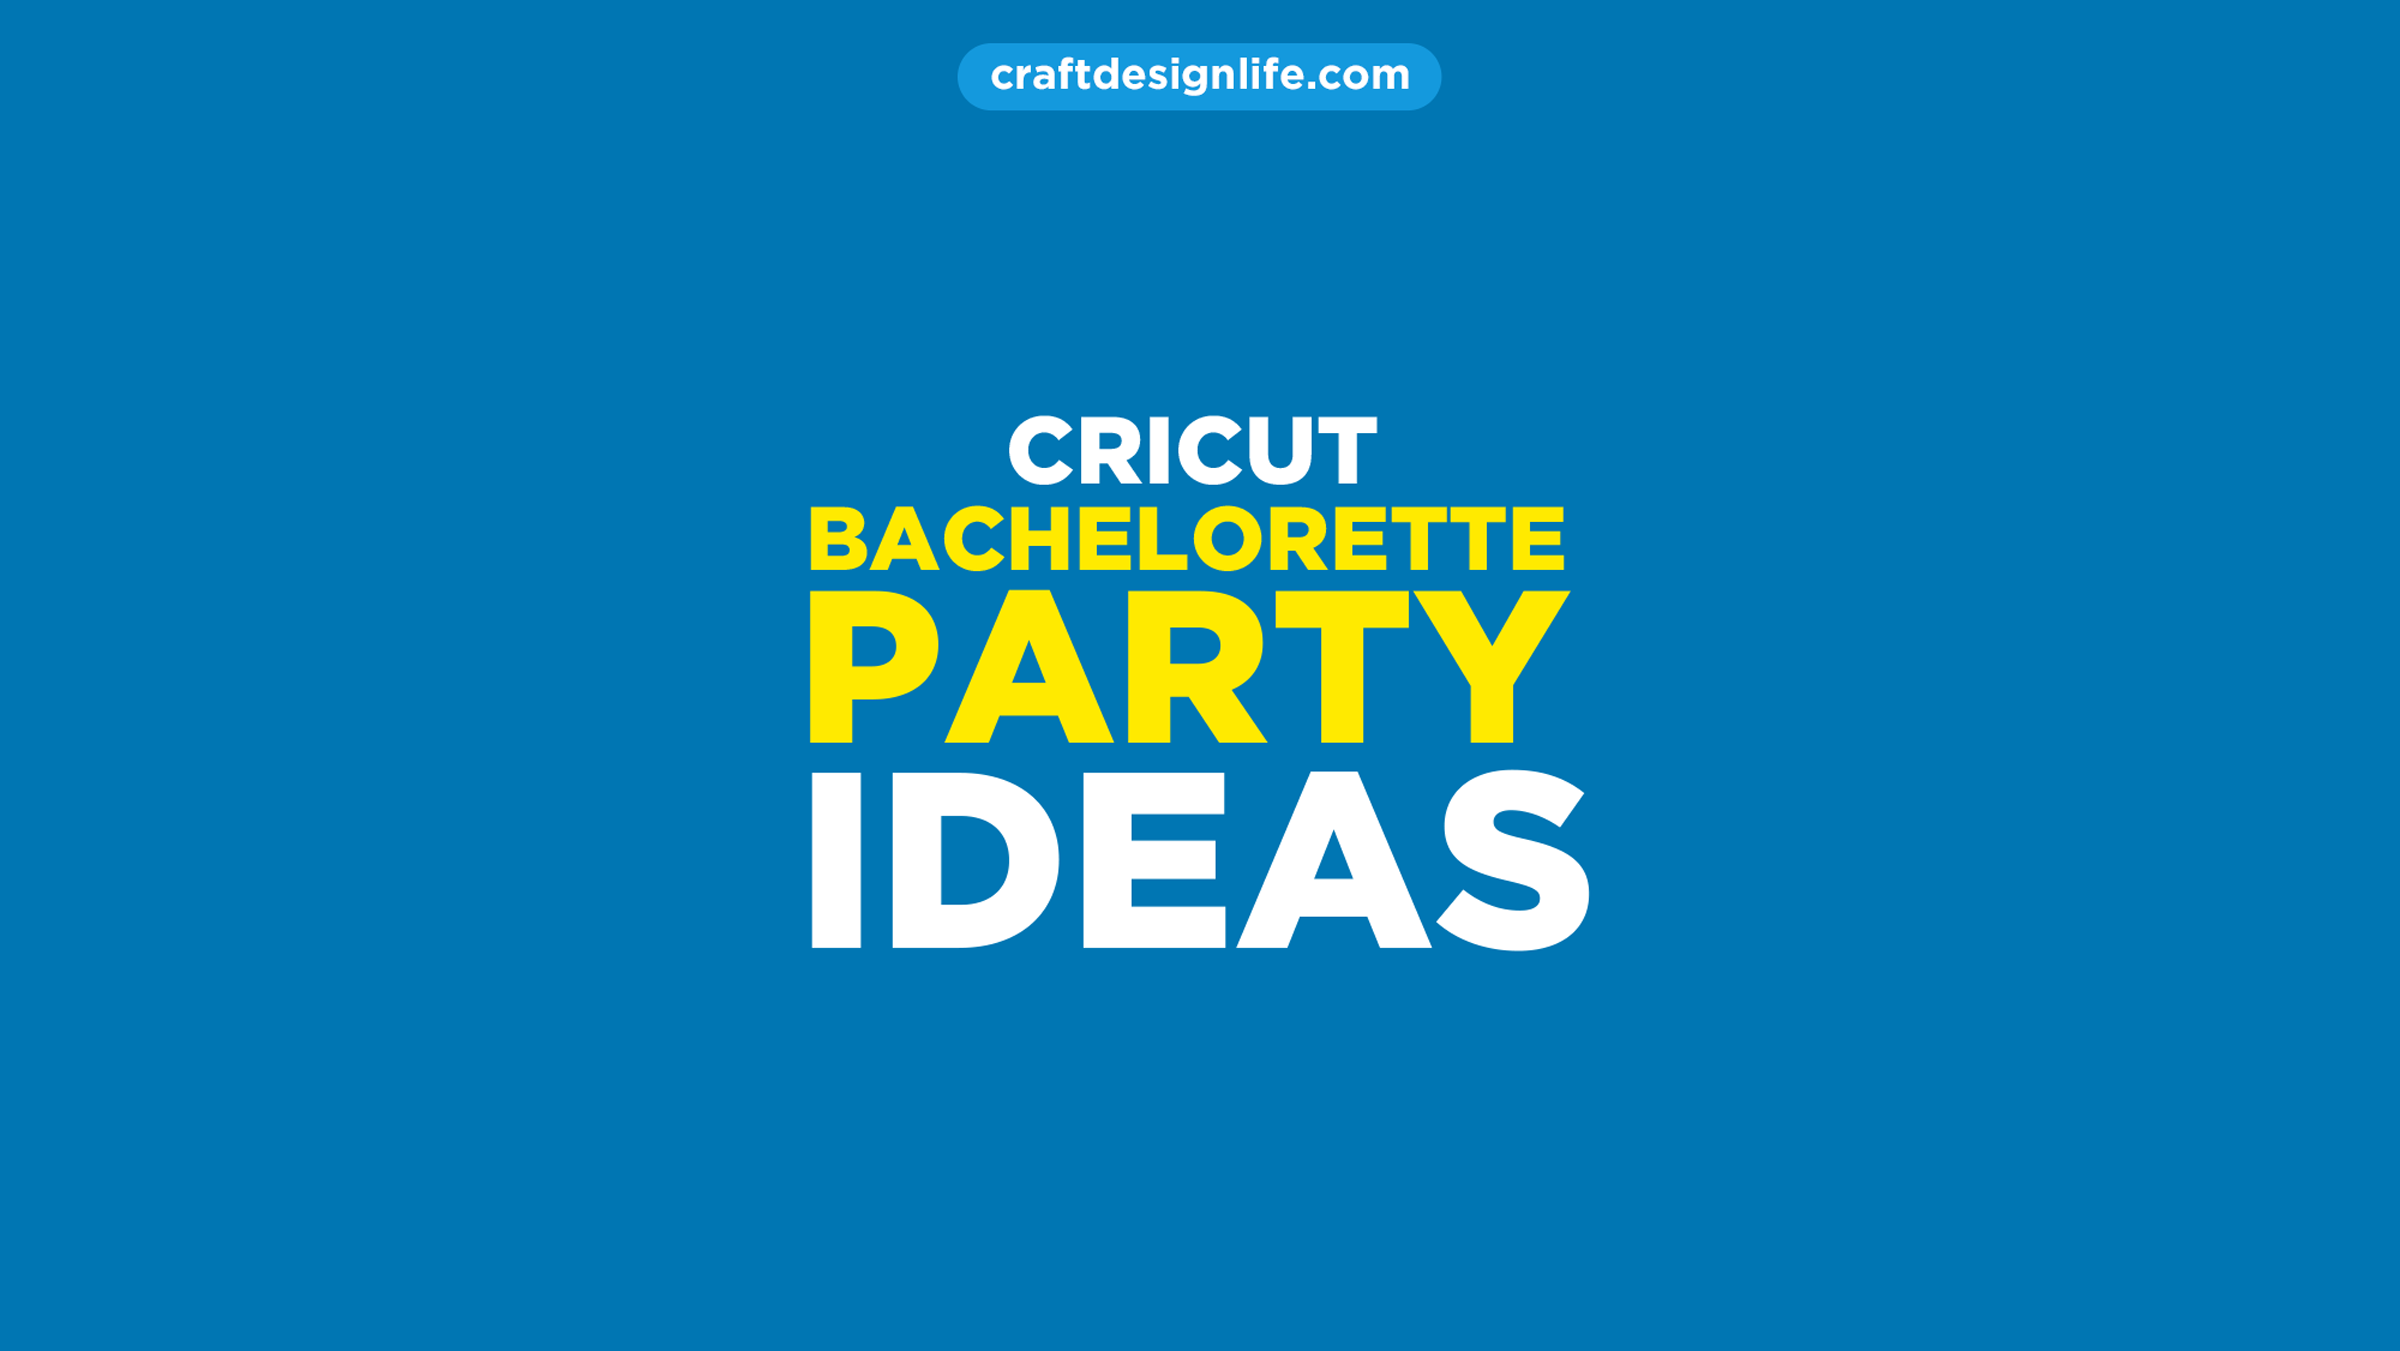 10 Cricut Bachelorette Party Ideas